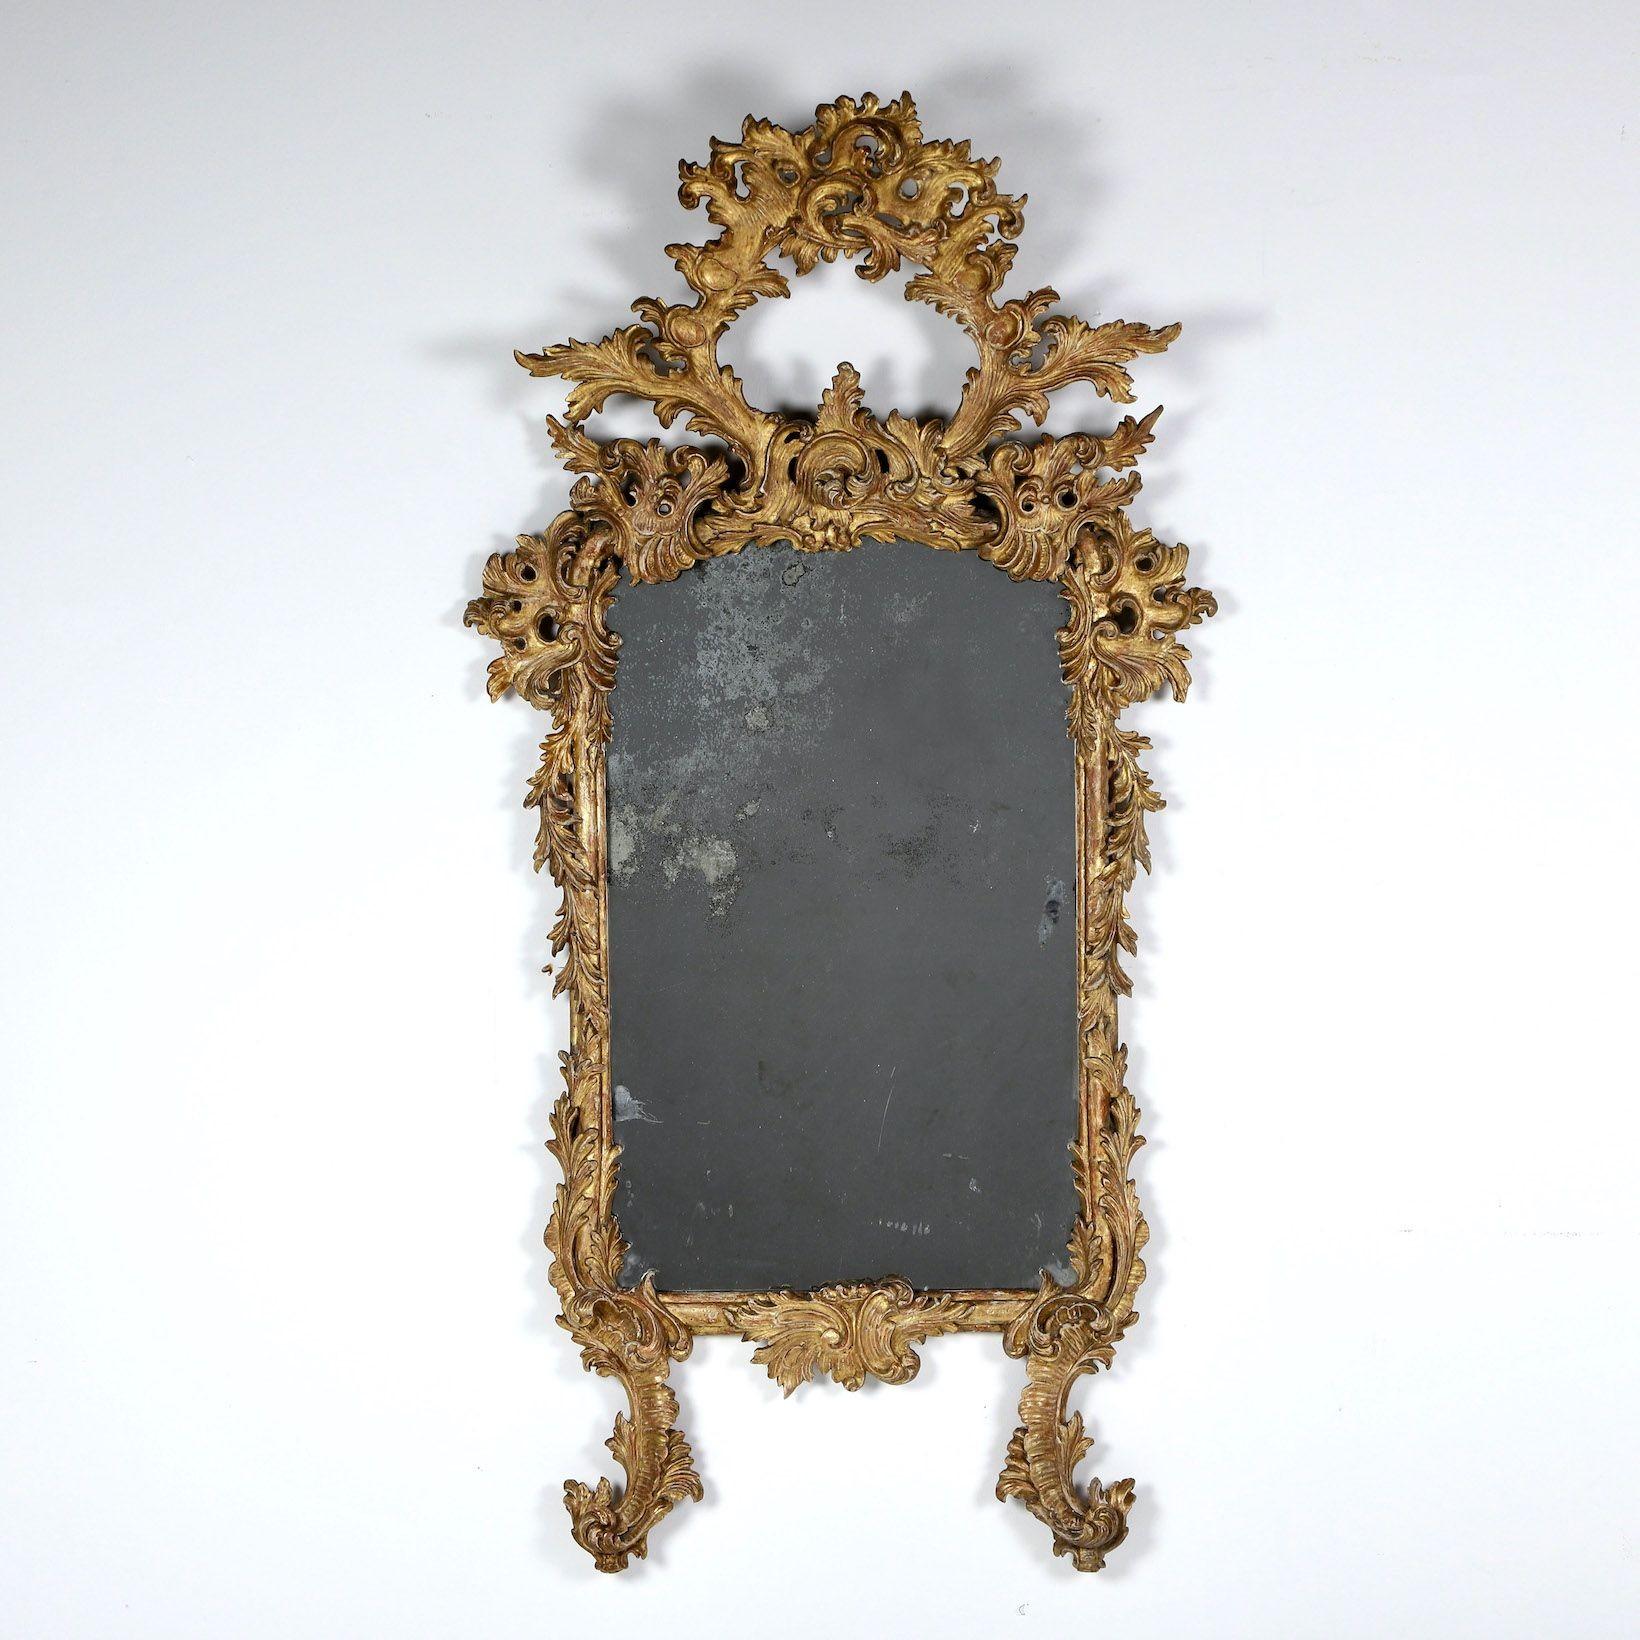 Miroir en bois doré d'origine, magnifiquement vieilli, avec plaque de miroir d'origine, de style rococo avec motif de feuilles fluides et symétriques, vers 1820. Forme Elegante, sculptée en sections.

La période rococo a suivi la période baroque et